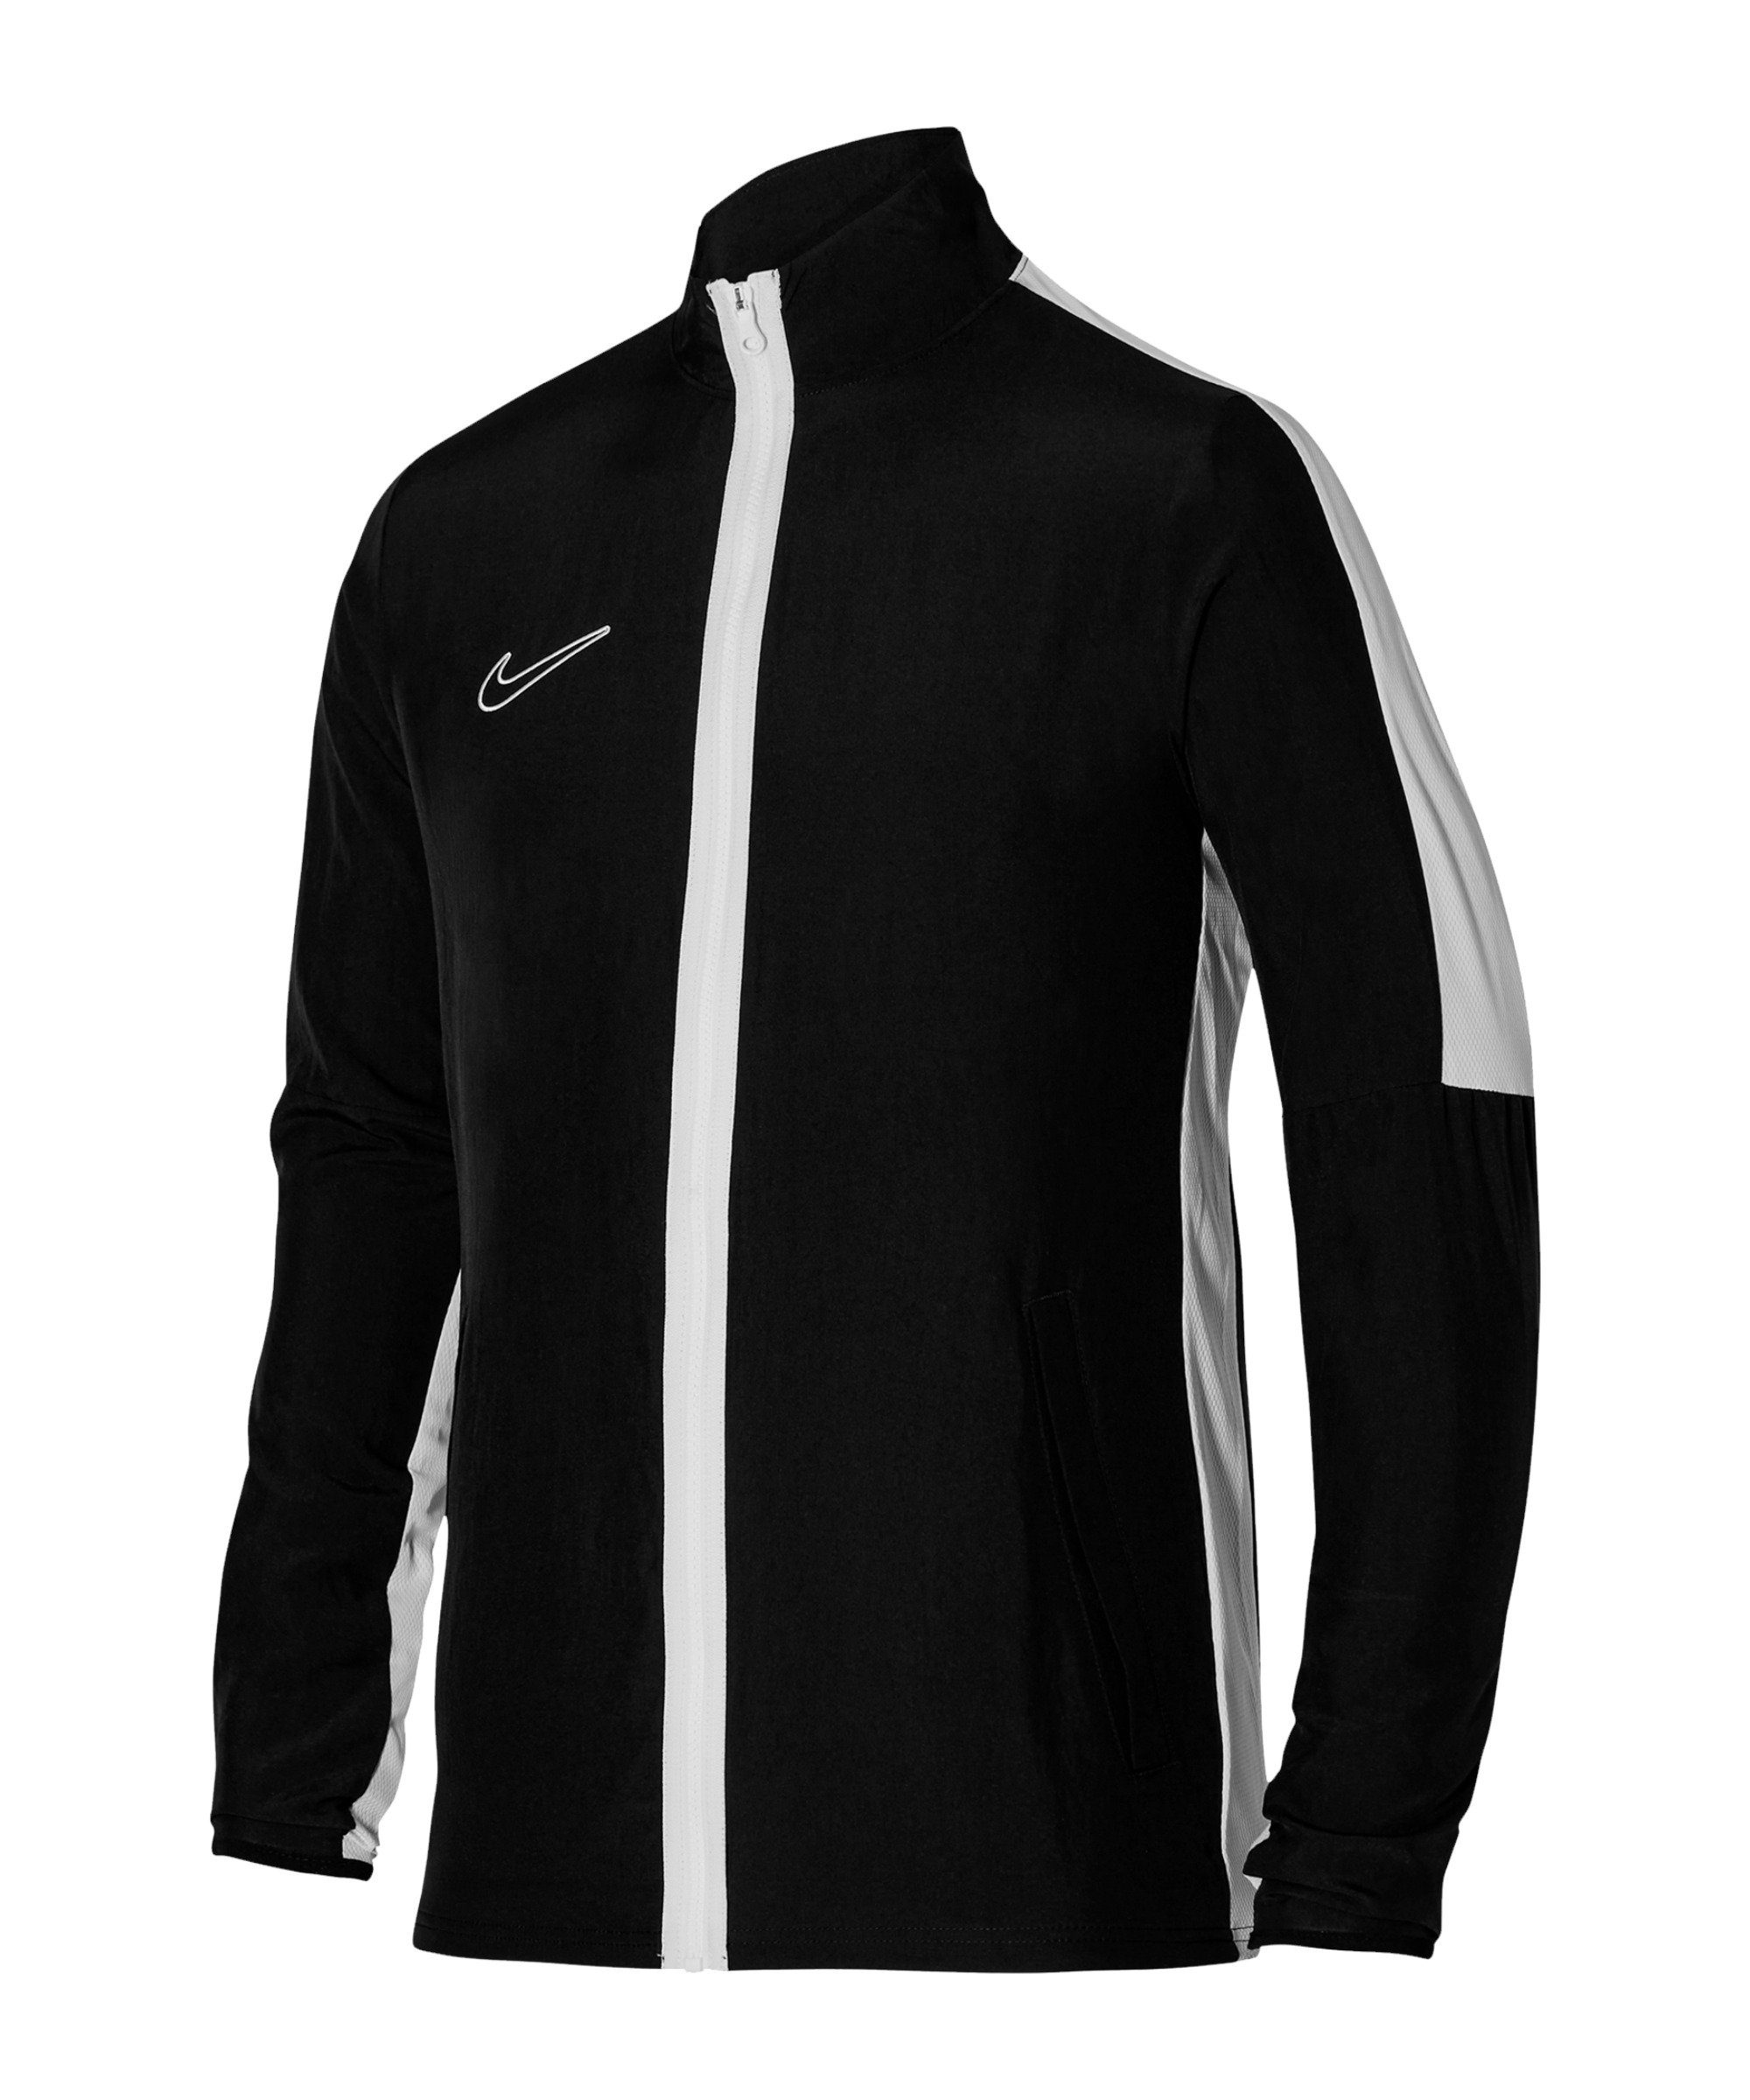 23 Sweatjacke Academy Nike Woven schwarzweissweiss Trainingsjacke